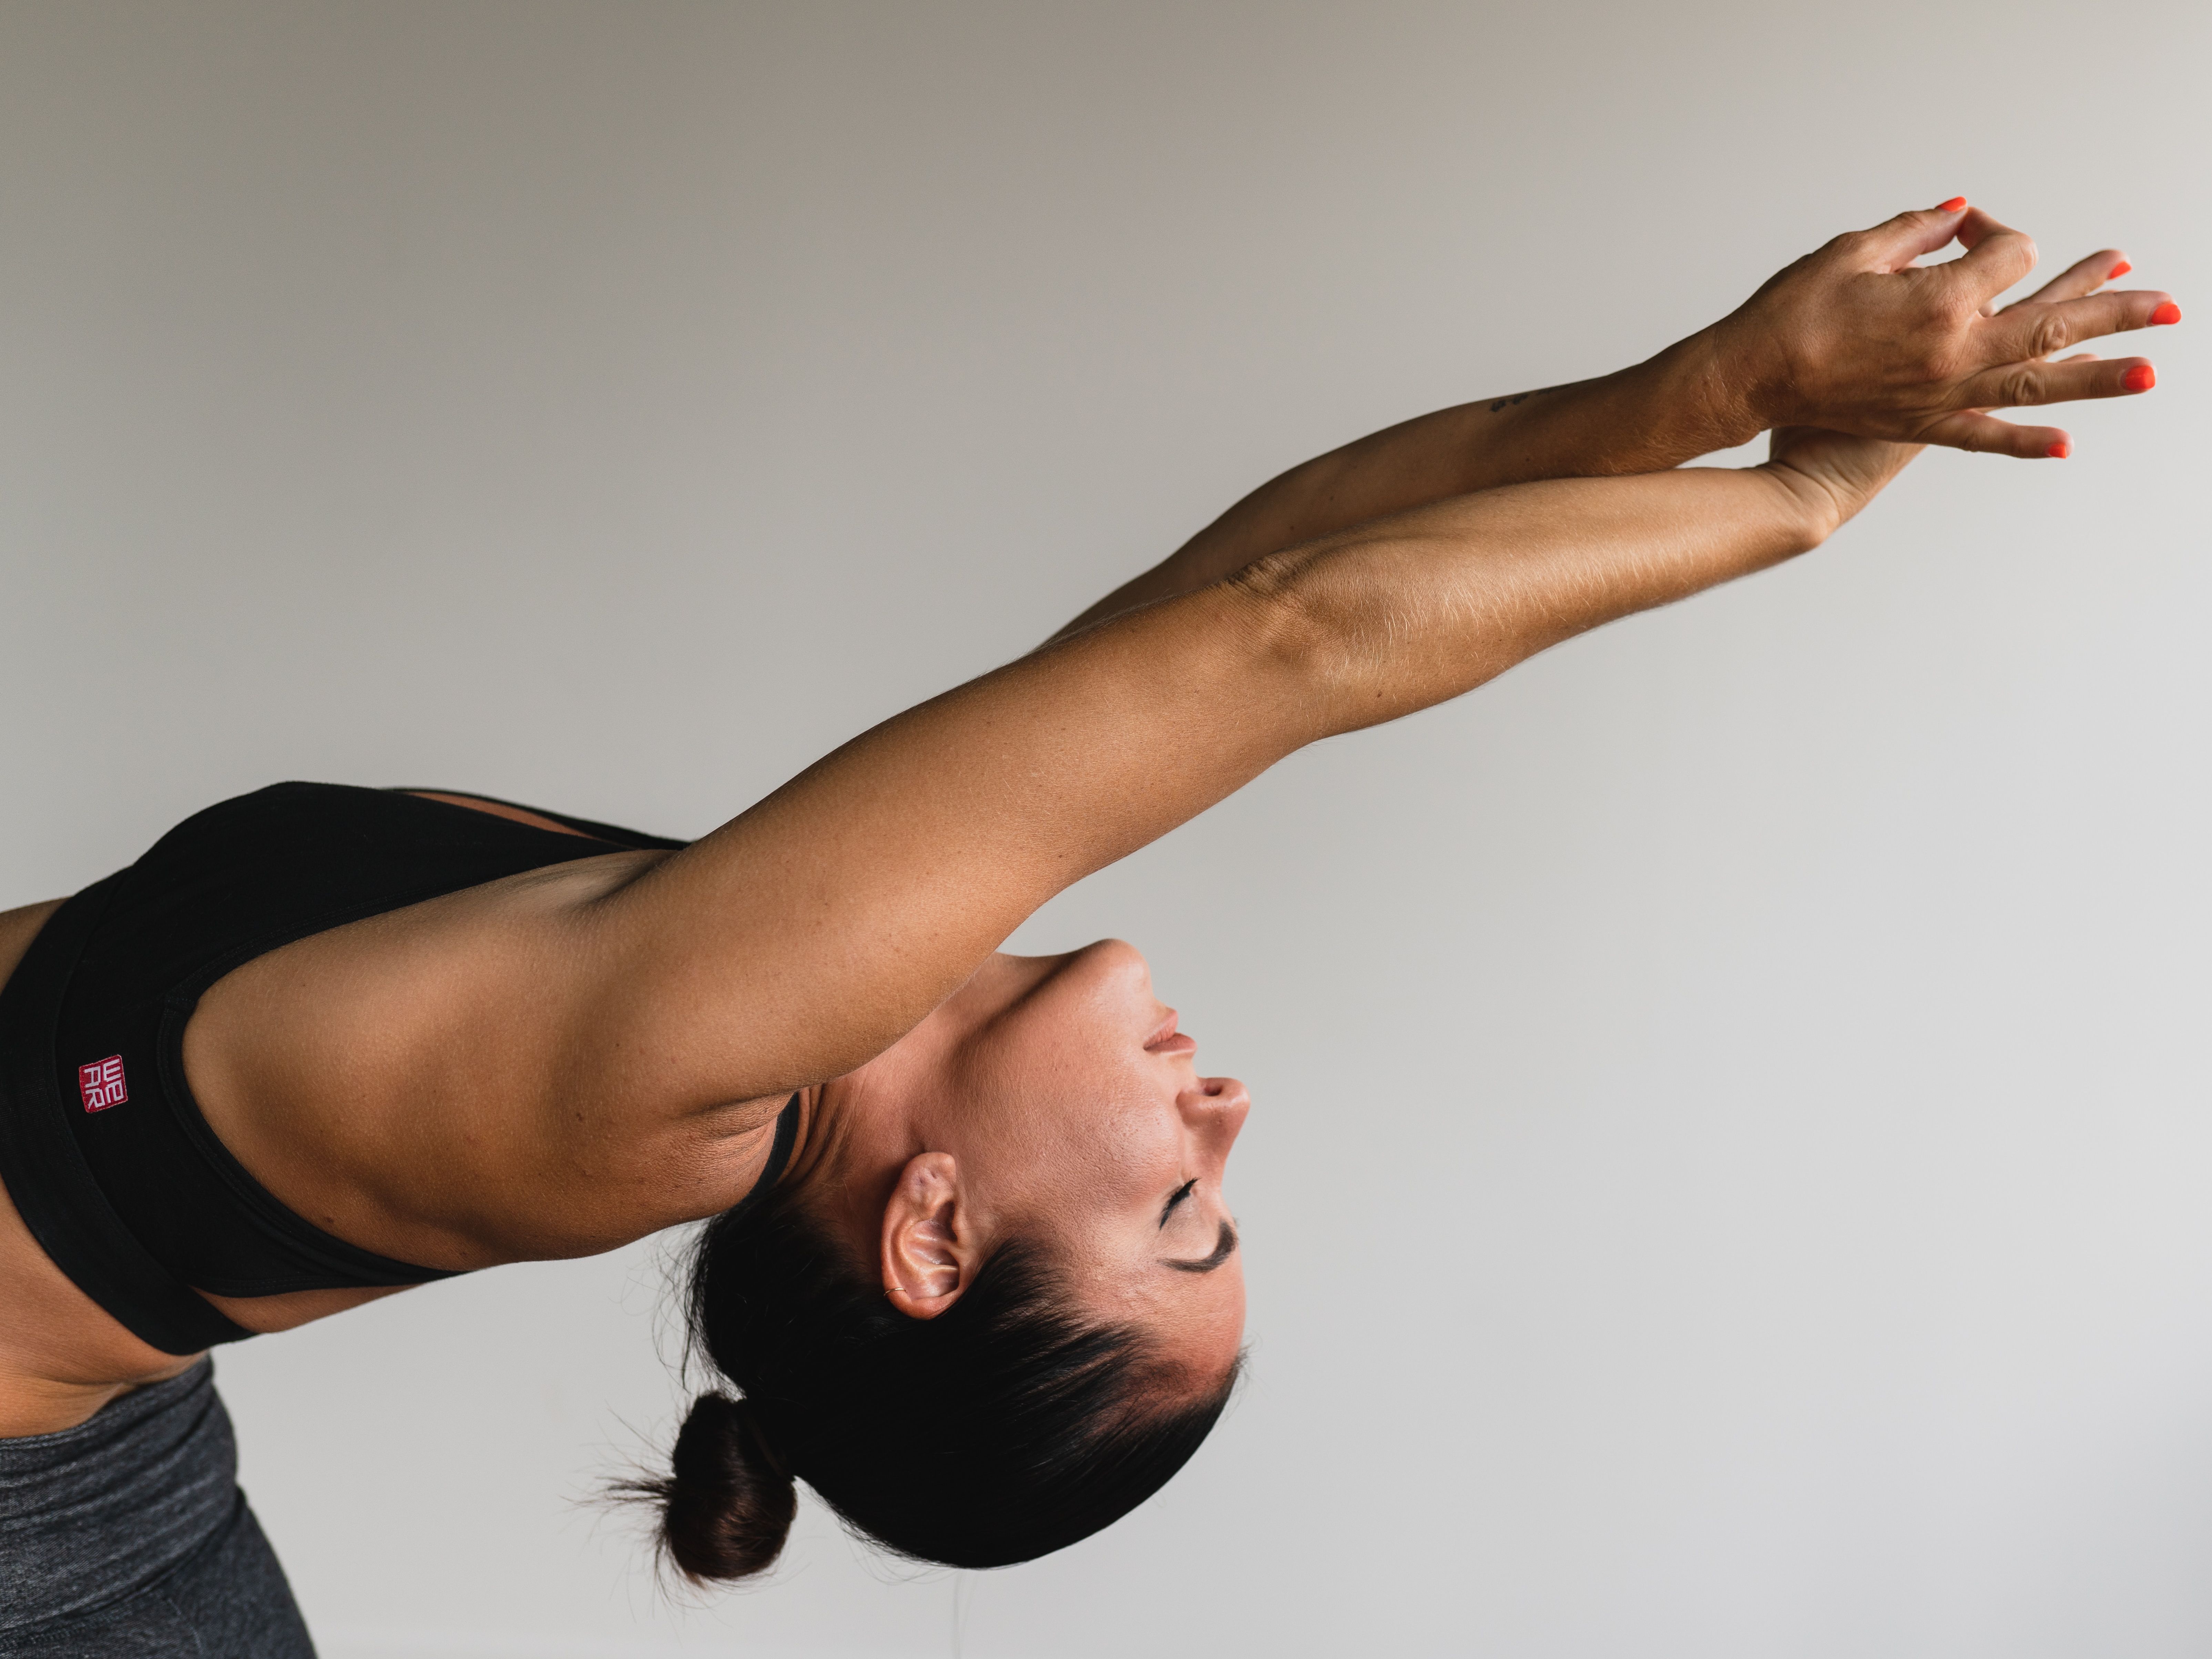 Exercices pour les bras spécial femme : défi 30 jours